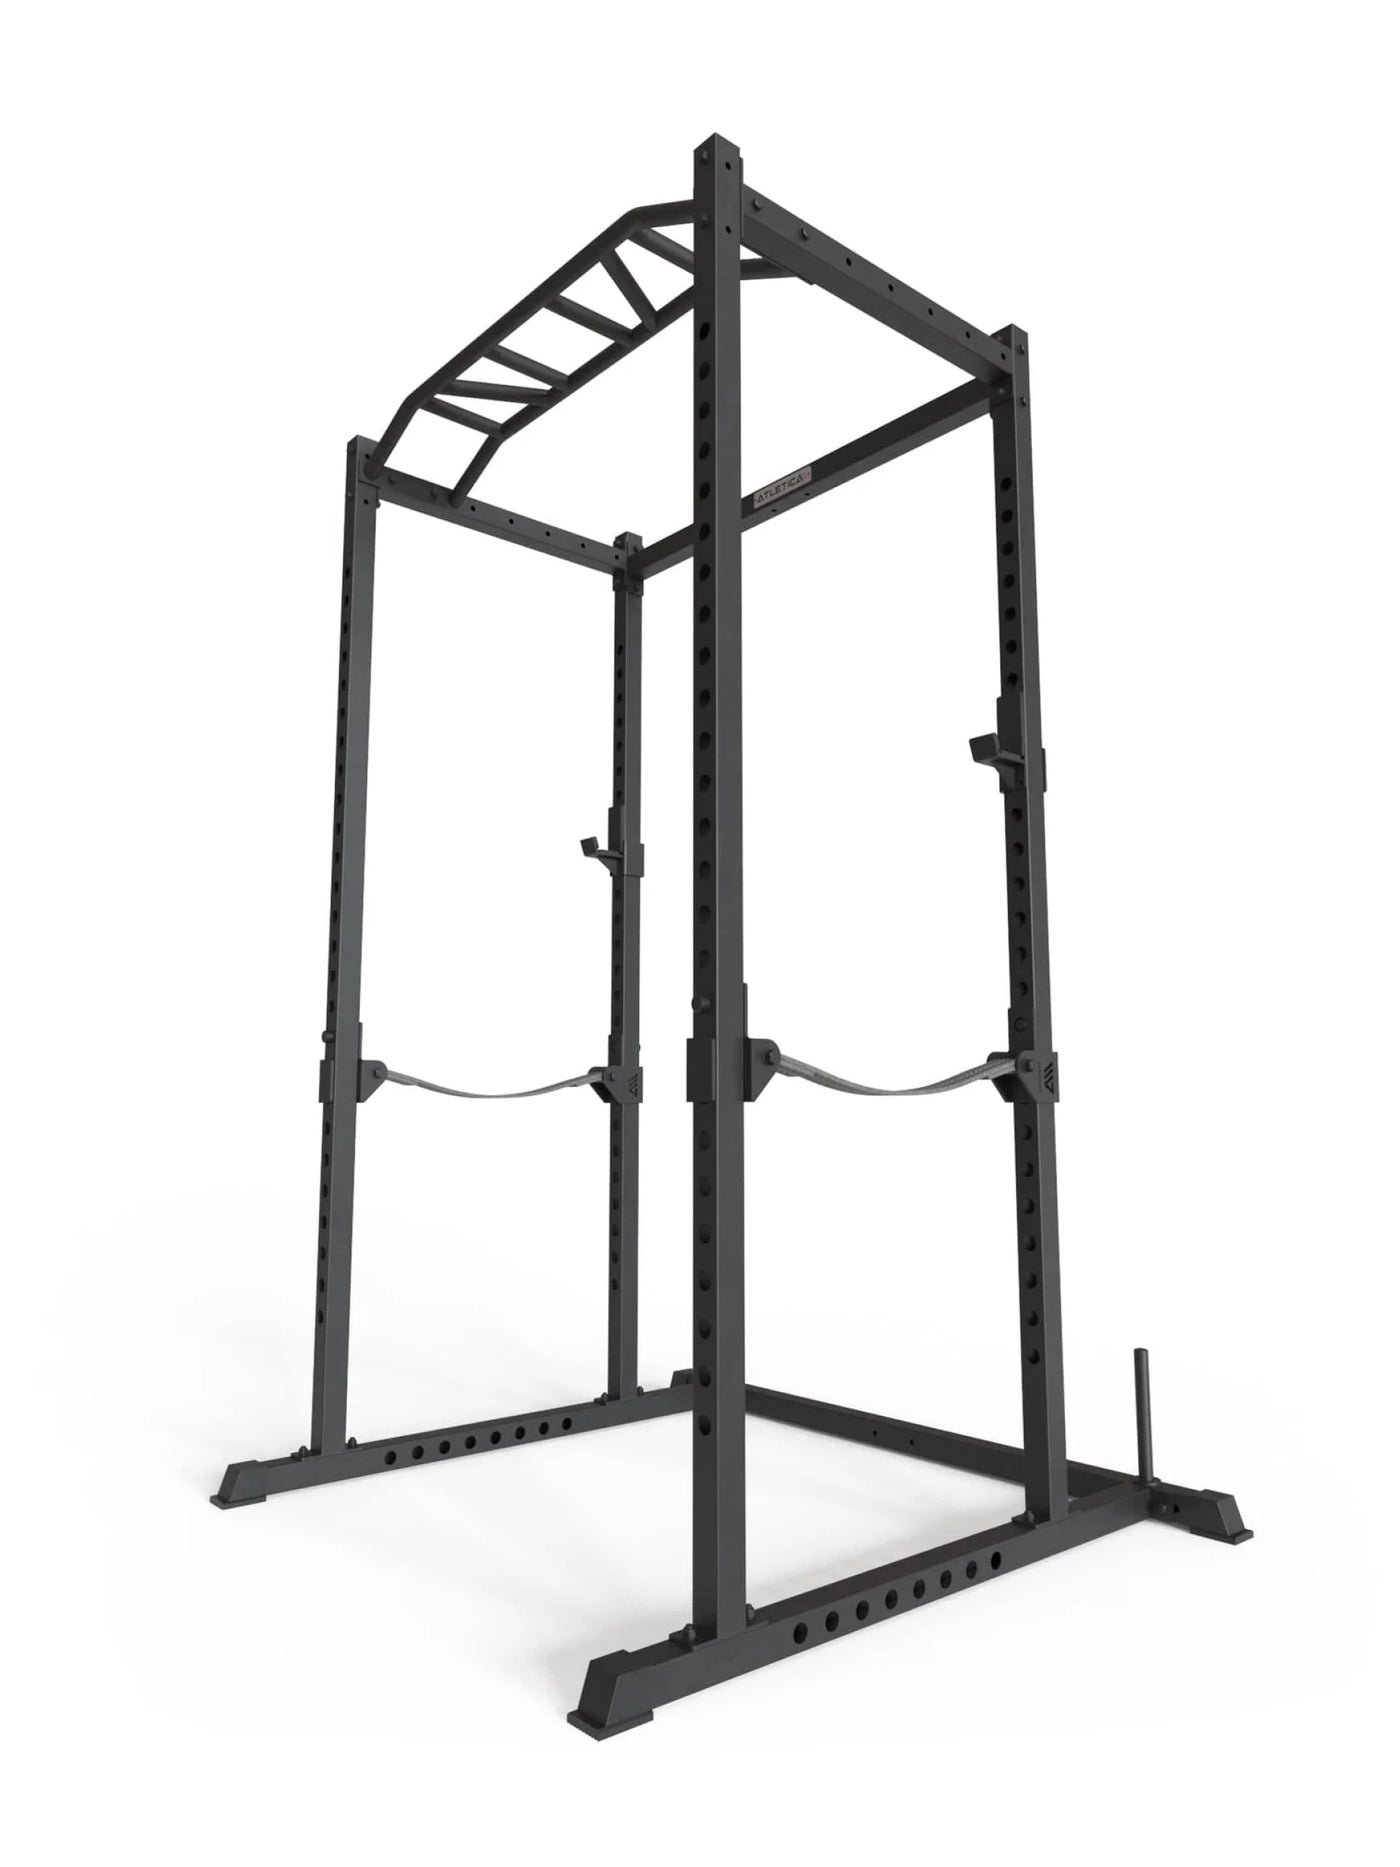 Power Rack R5 Base Käfig: Multi-Grip Pull-Up Bar, Pin-and-Pipe-Safeties, J-Hooks und Gewichts-Pins, ideal für Fitnesstraining mit Hantelbank und Gewichten,  #size_195-cm